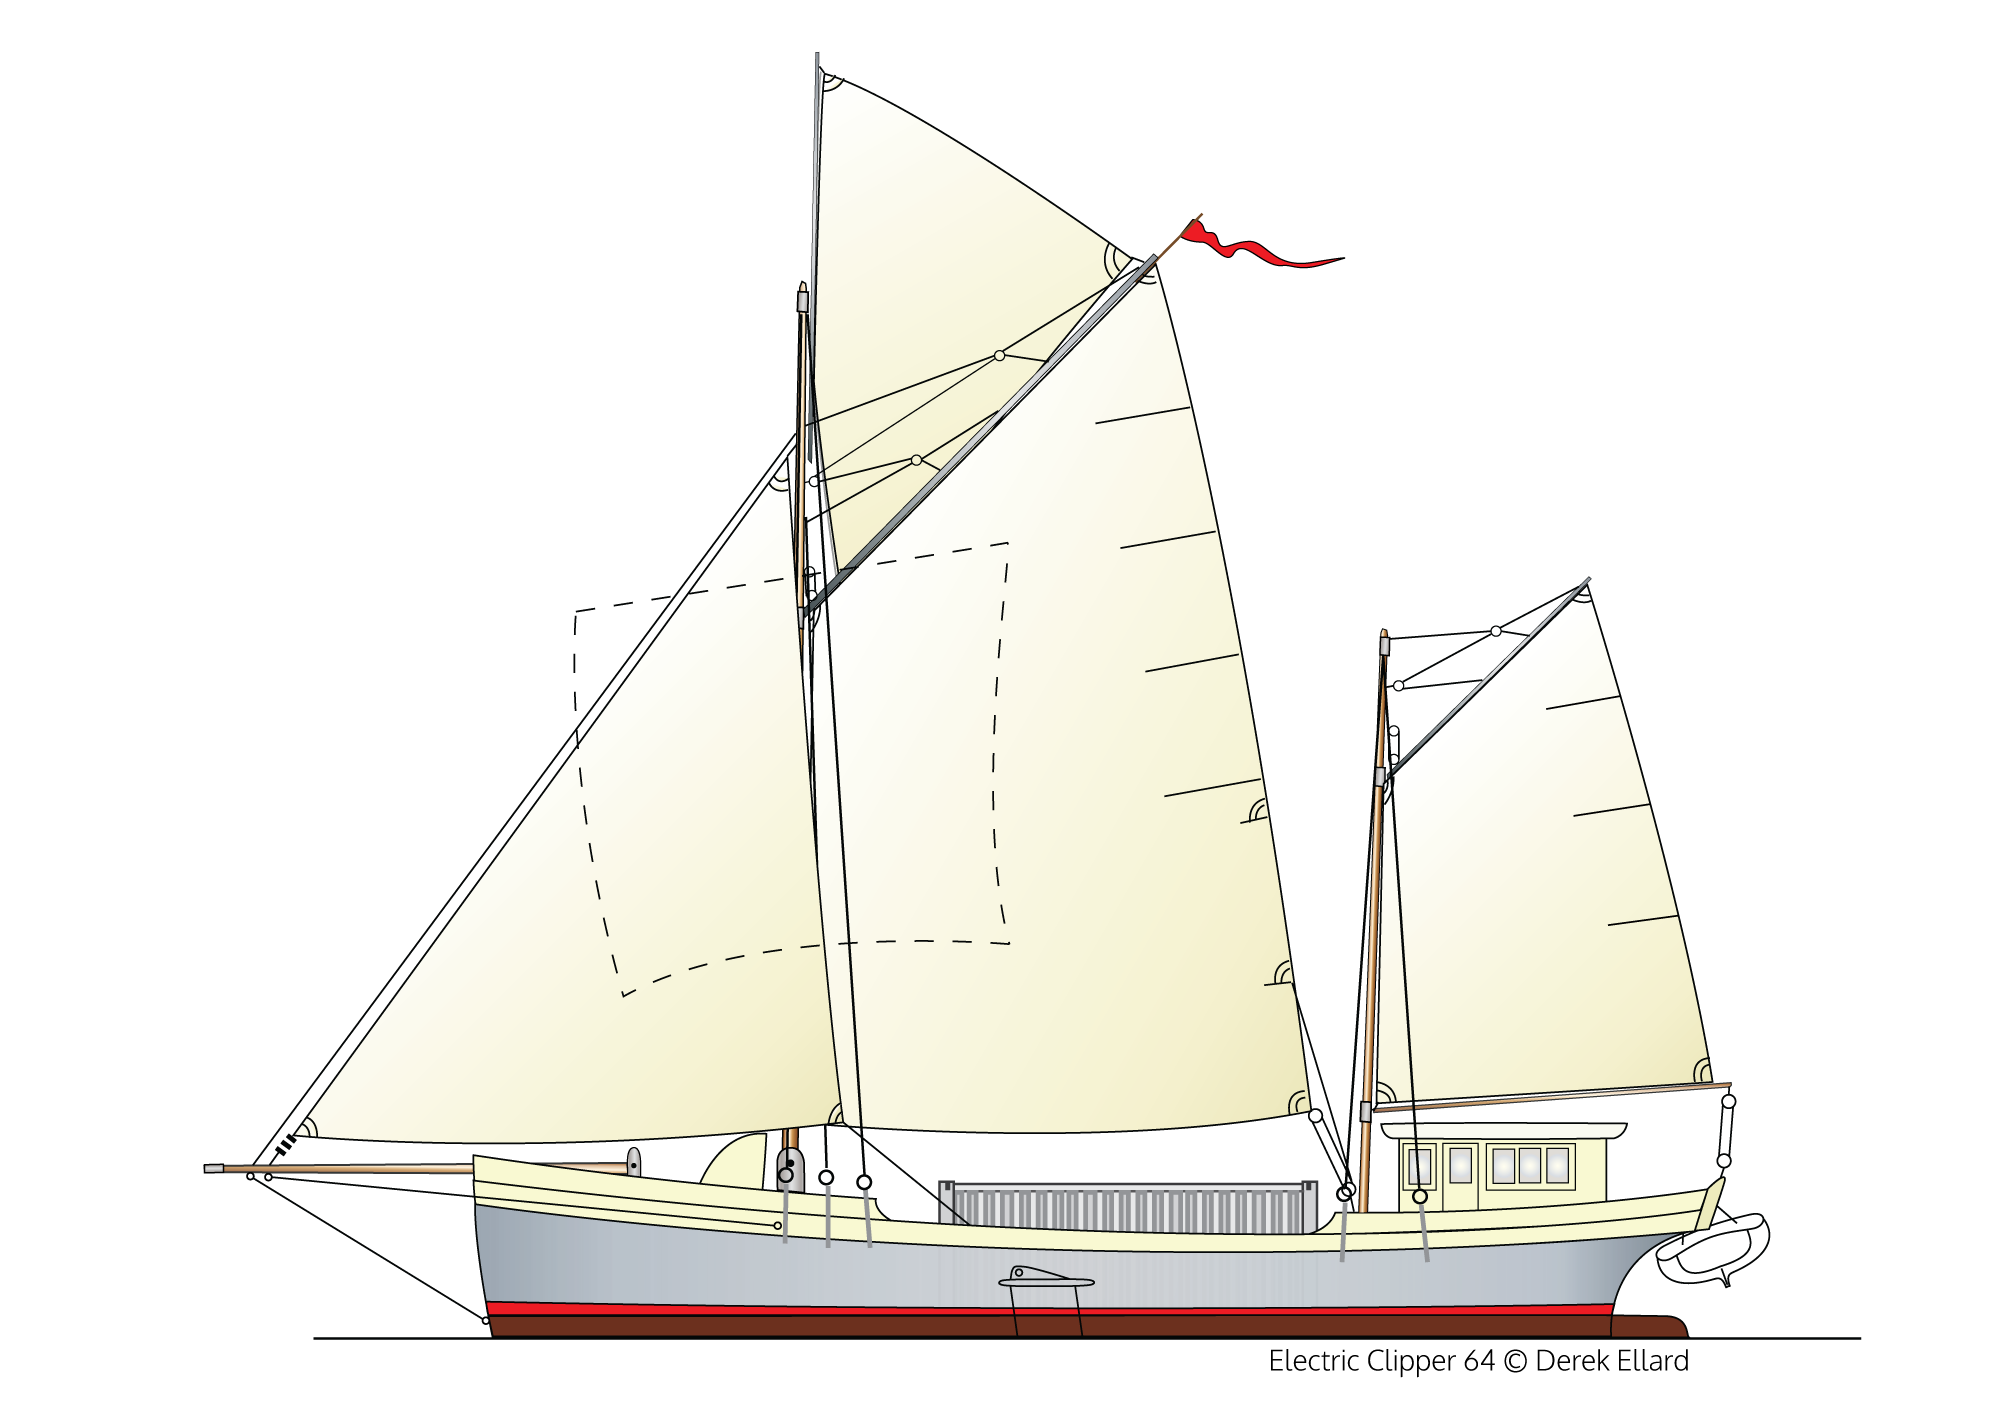 EC-64 work sails